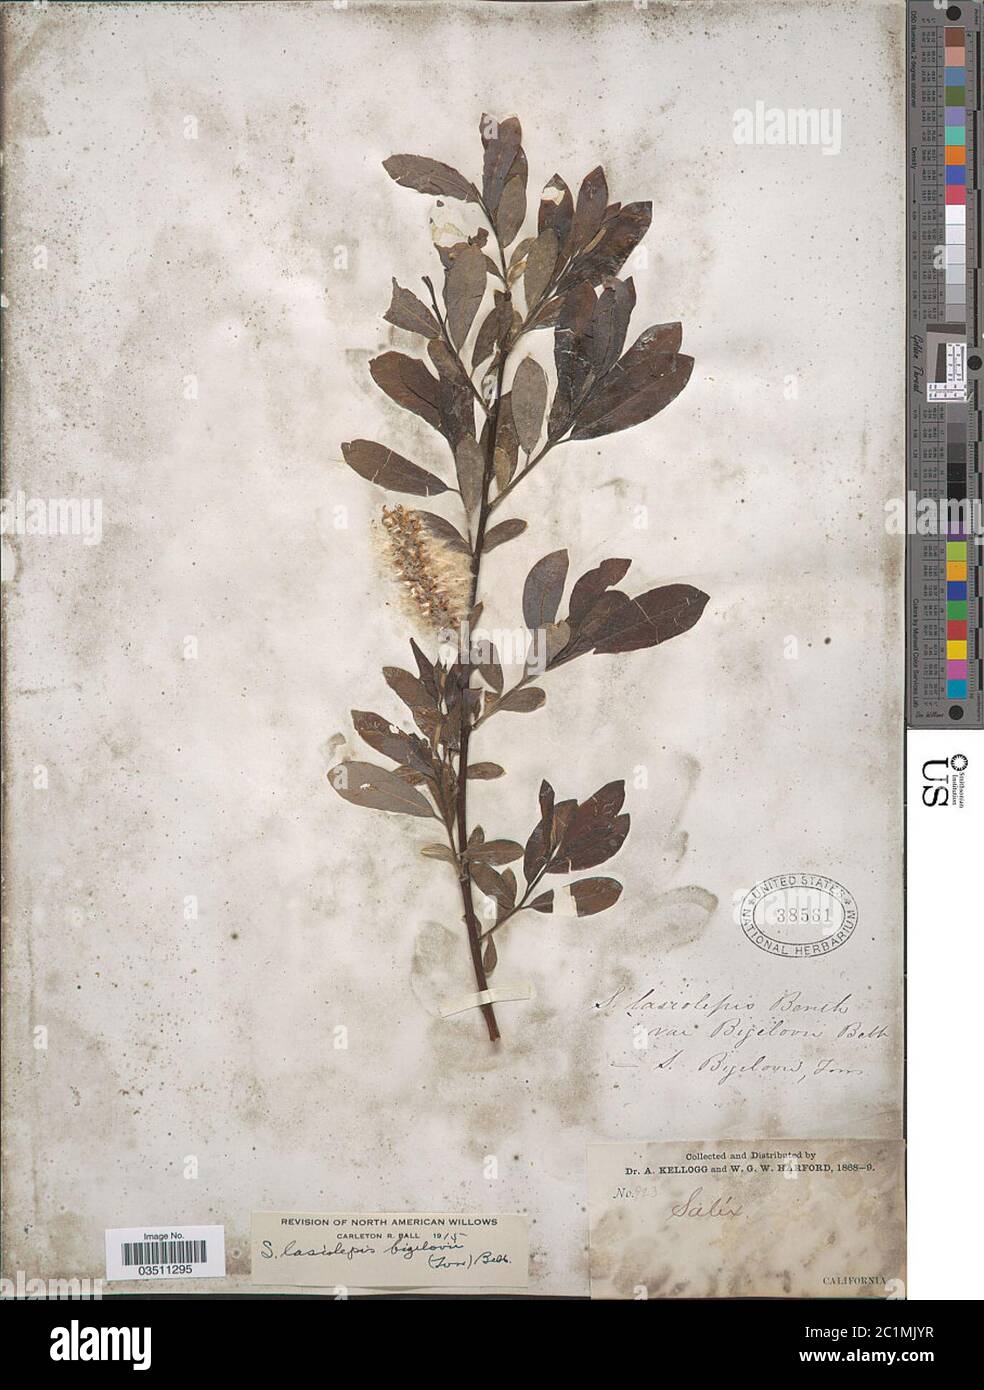 Salix lasiolepis var bigelovii Benth Salix lasiolepis var bigelovii Benth. Stock Photo